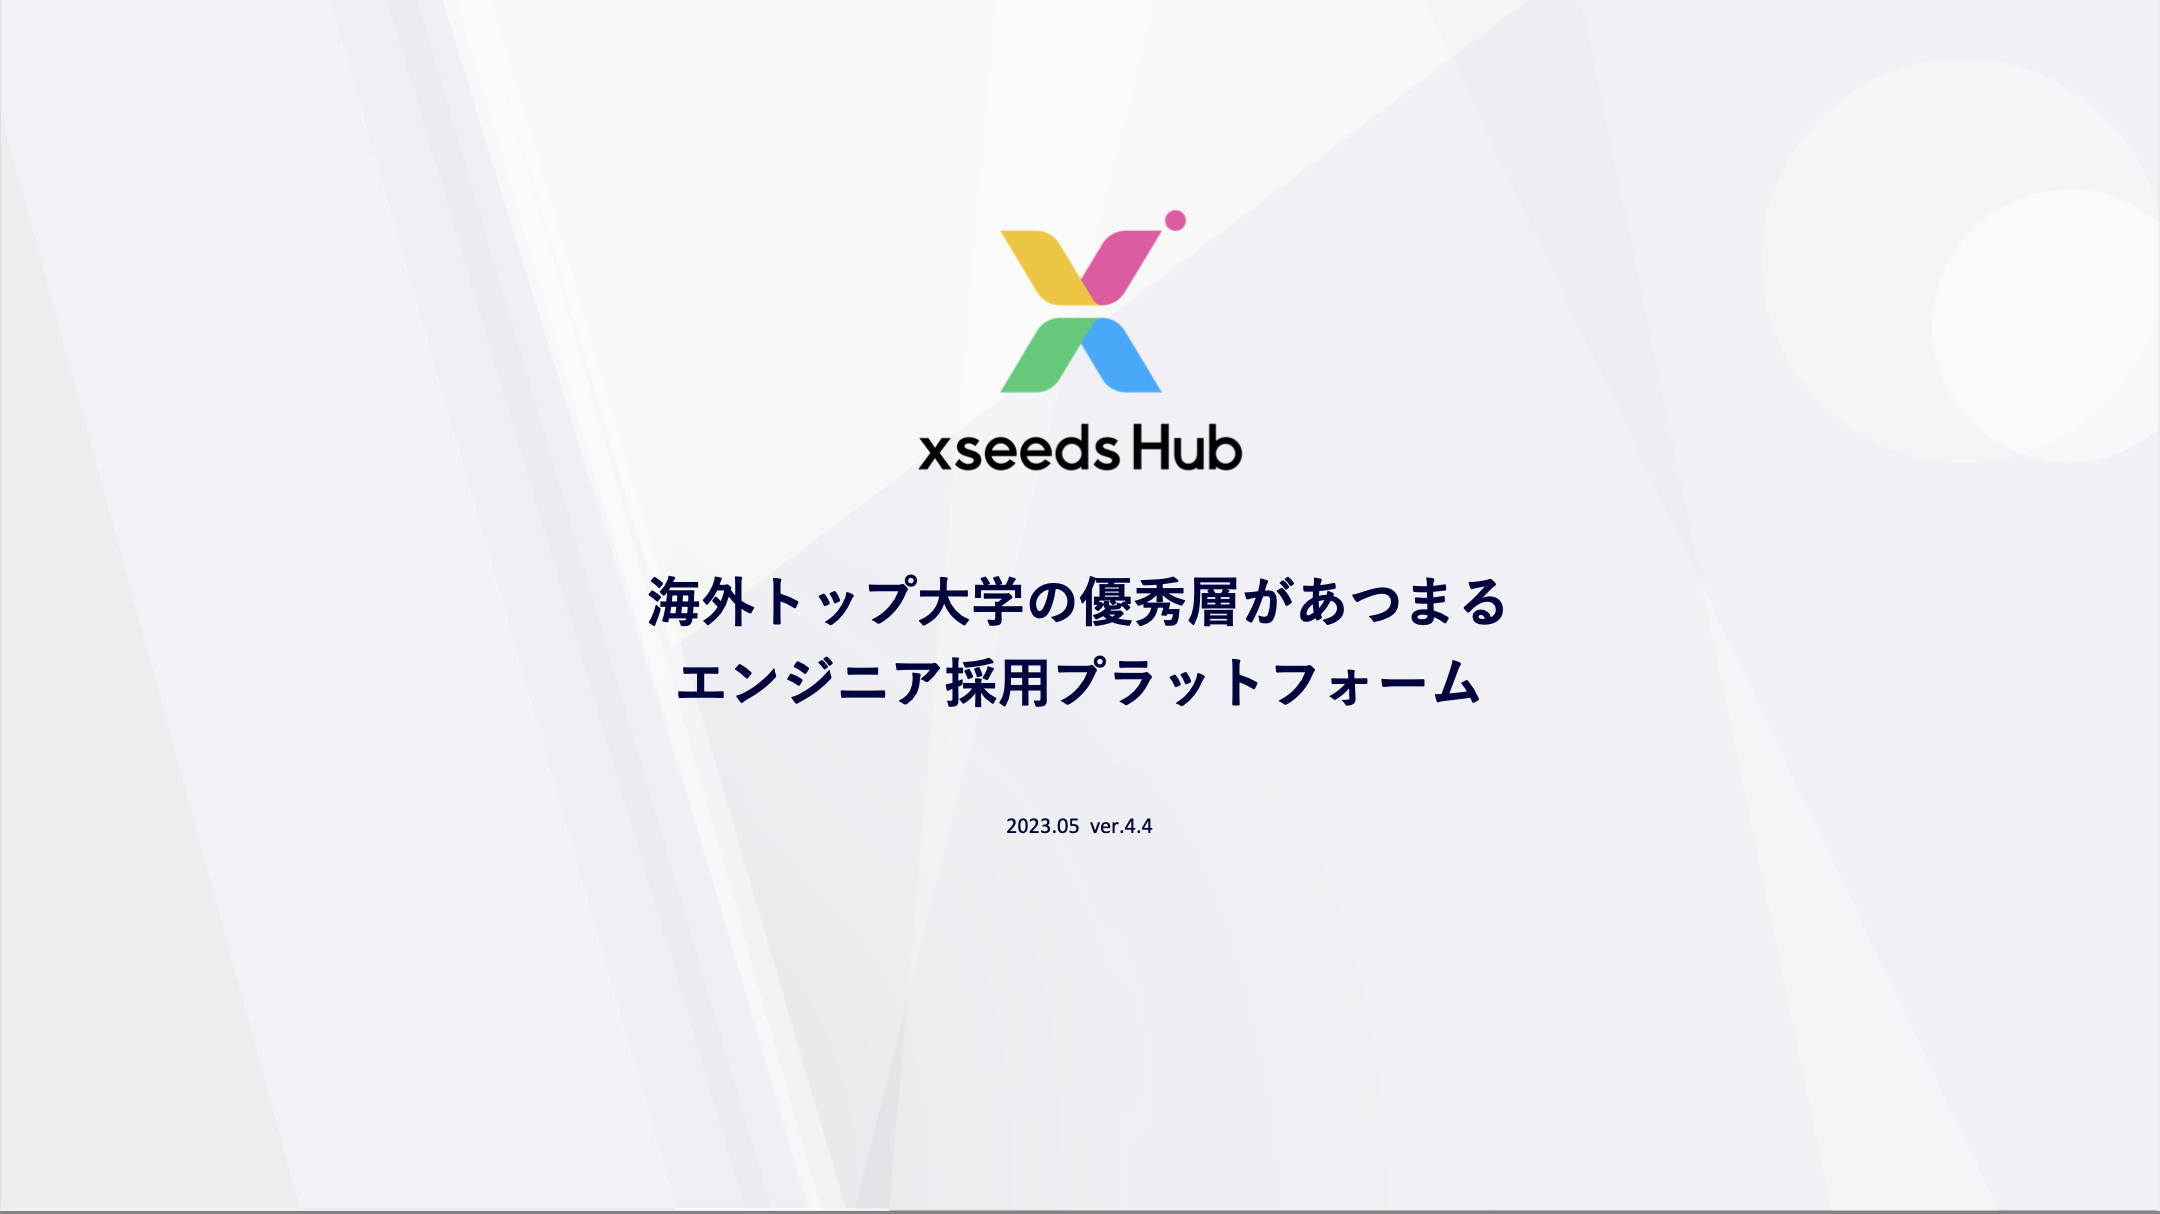 xseeds Hub_サービス概要